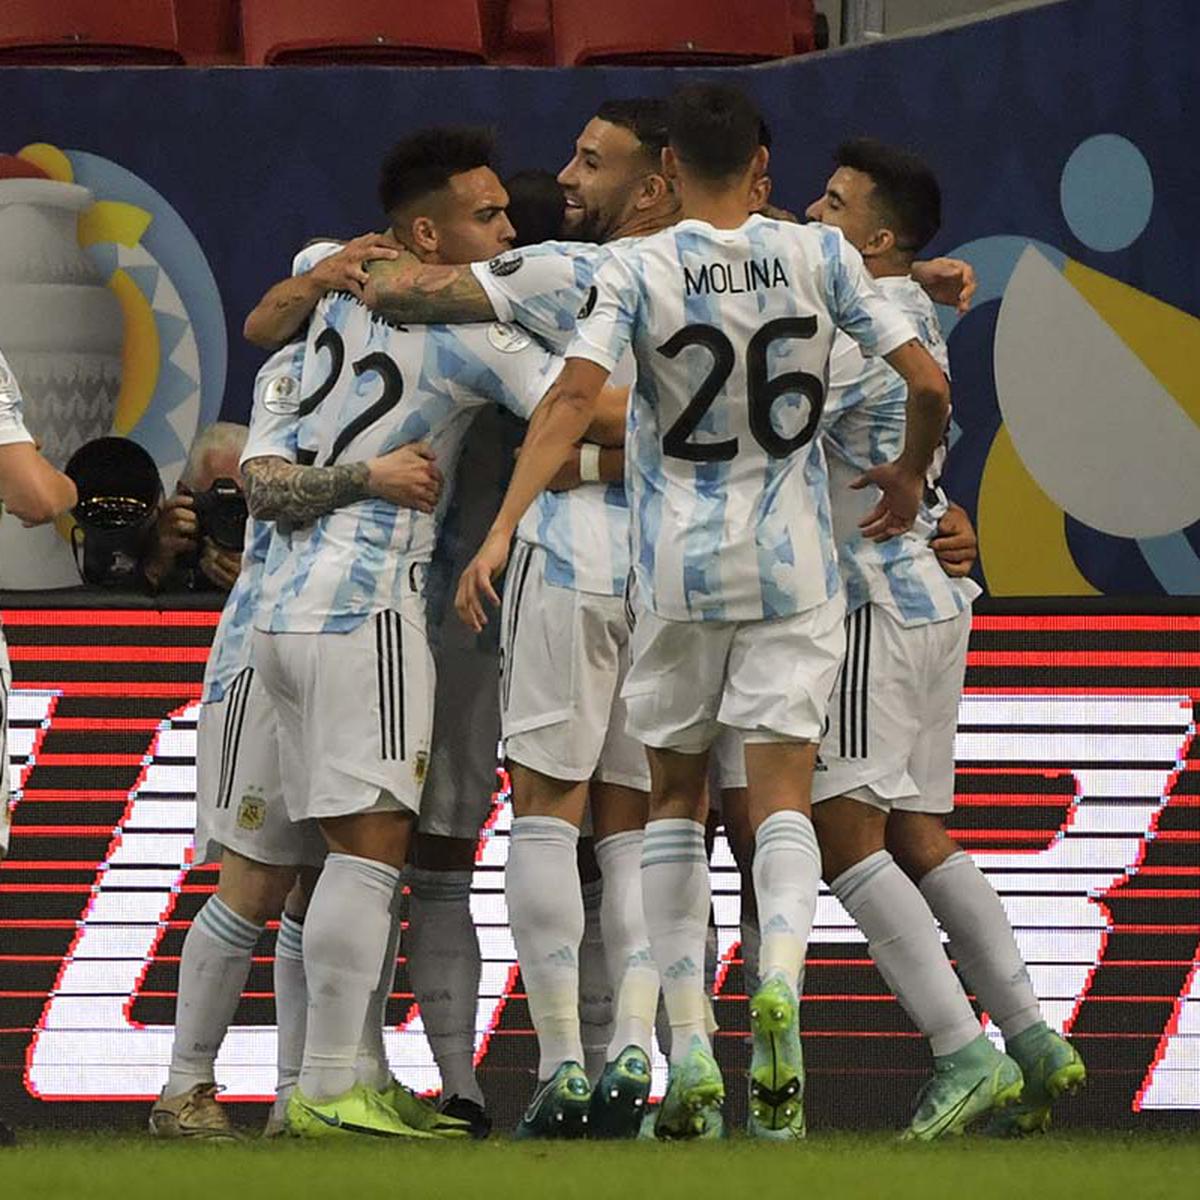 Uruguay vence 2-0 a Bolivia y accede a los cuartos de final de la